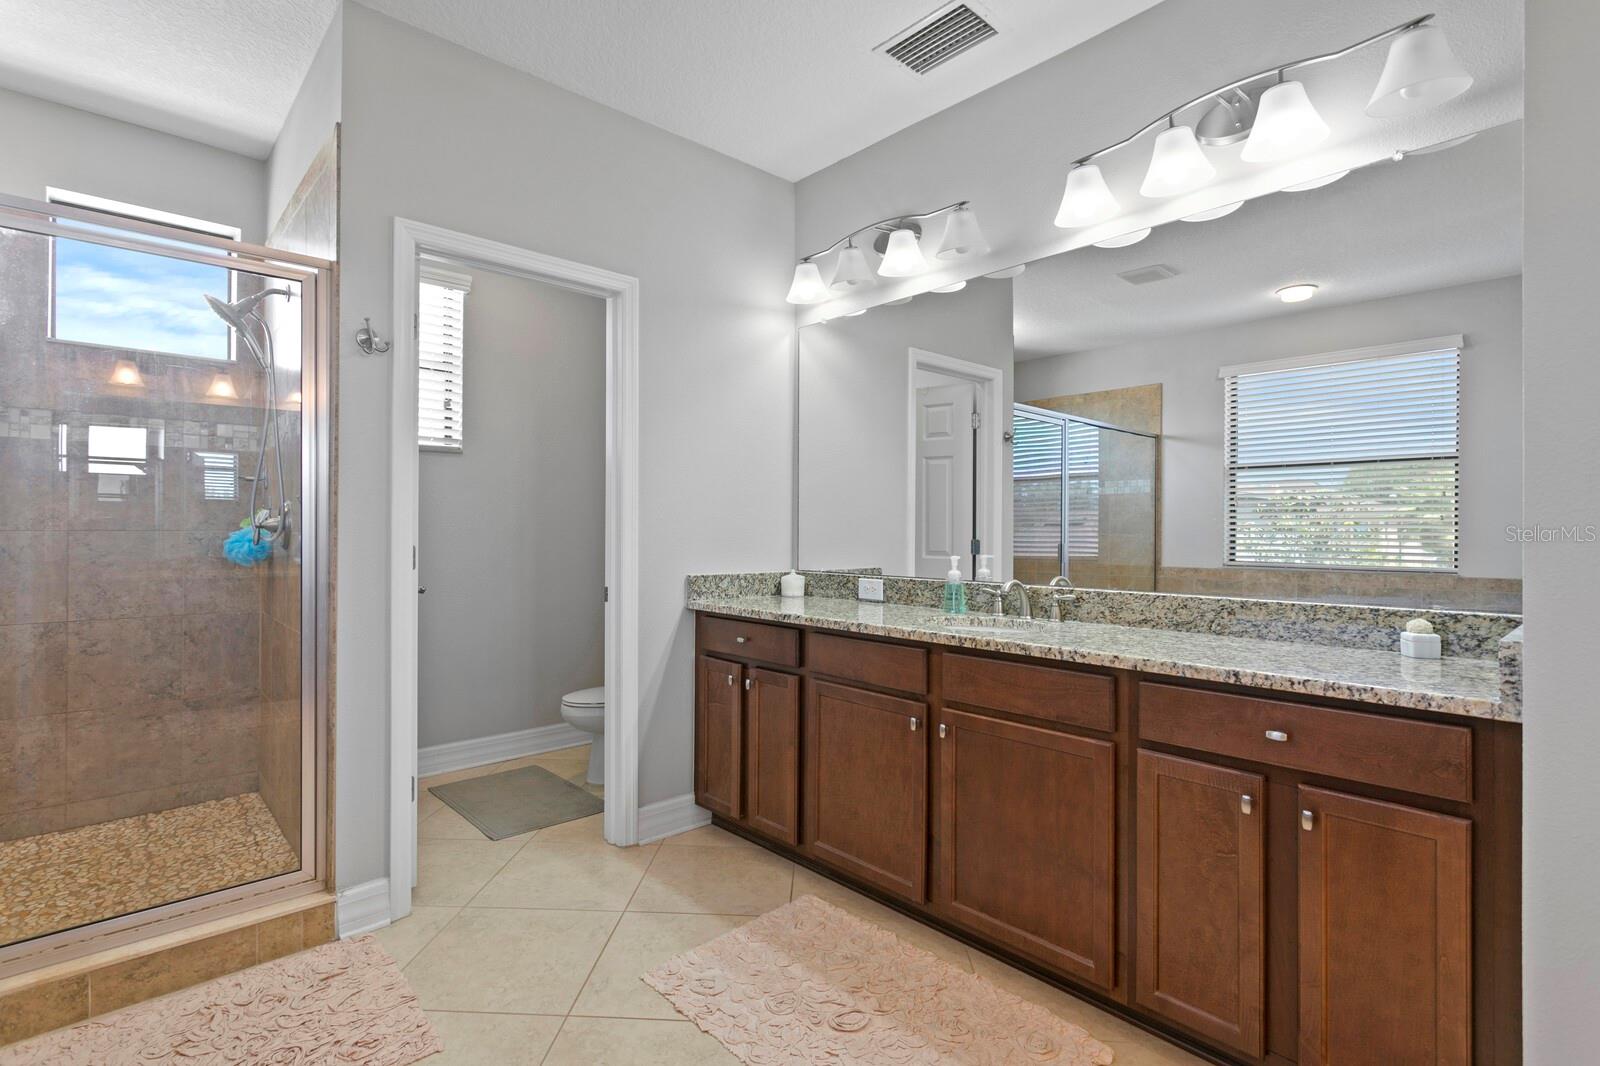 Owners ensuite bathroom has 2 separate vanity areas, tub and shower.